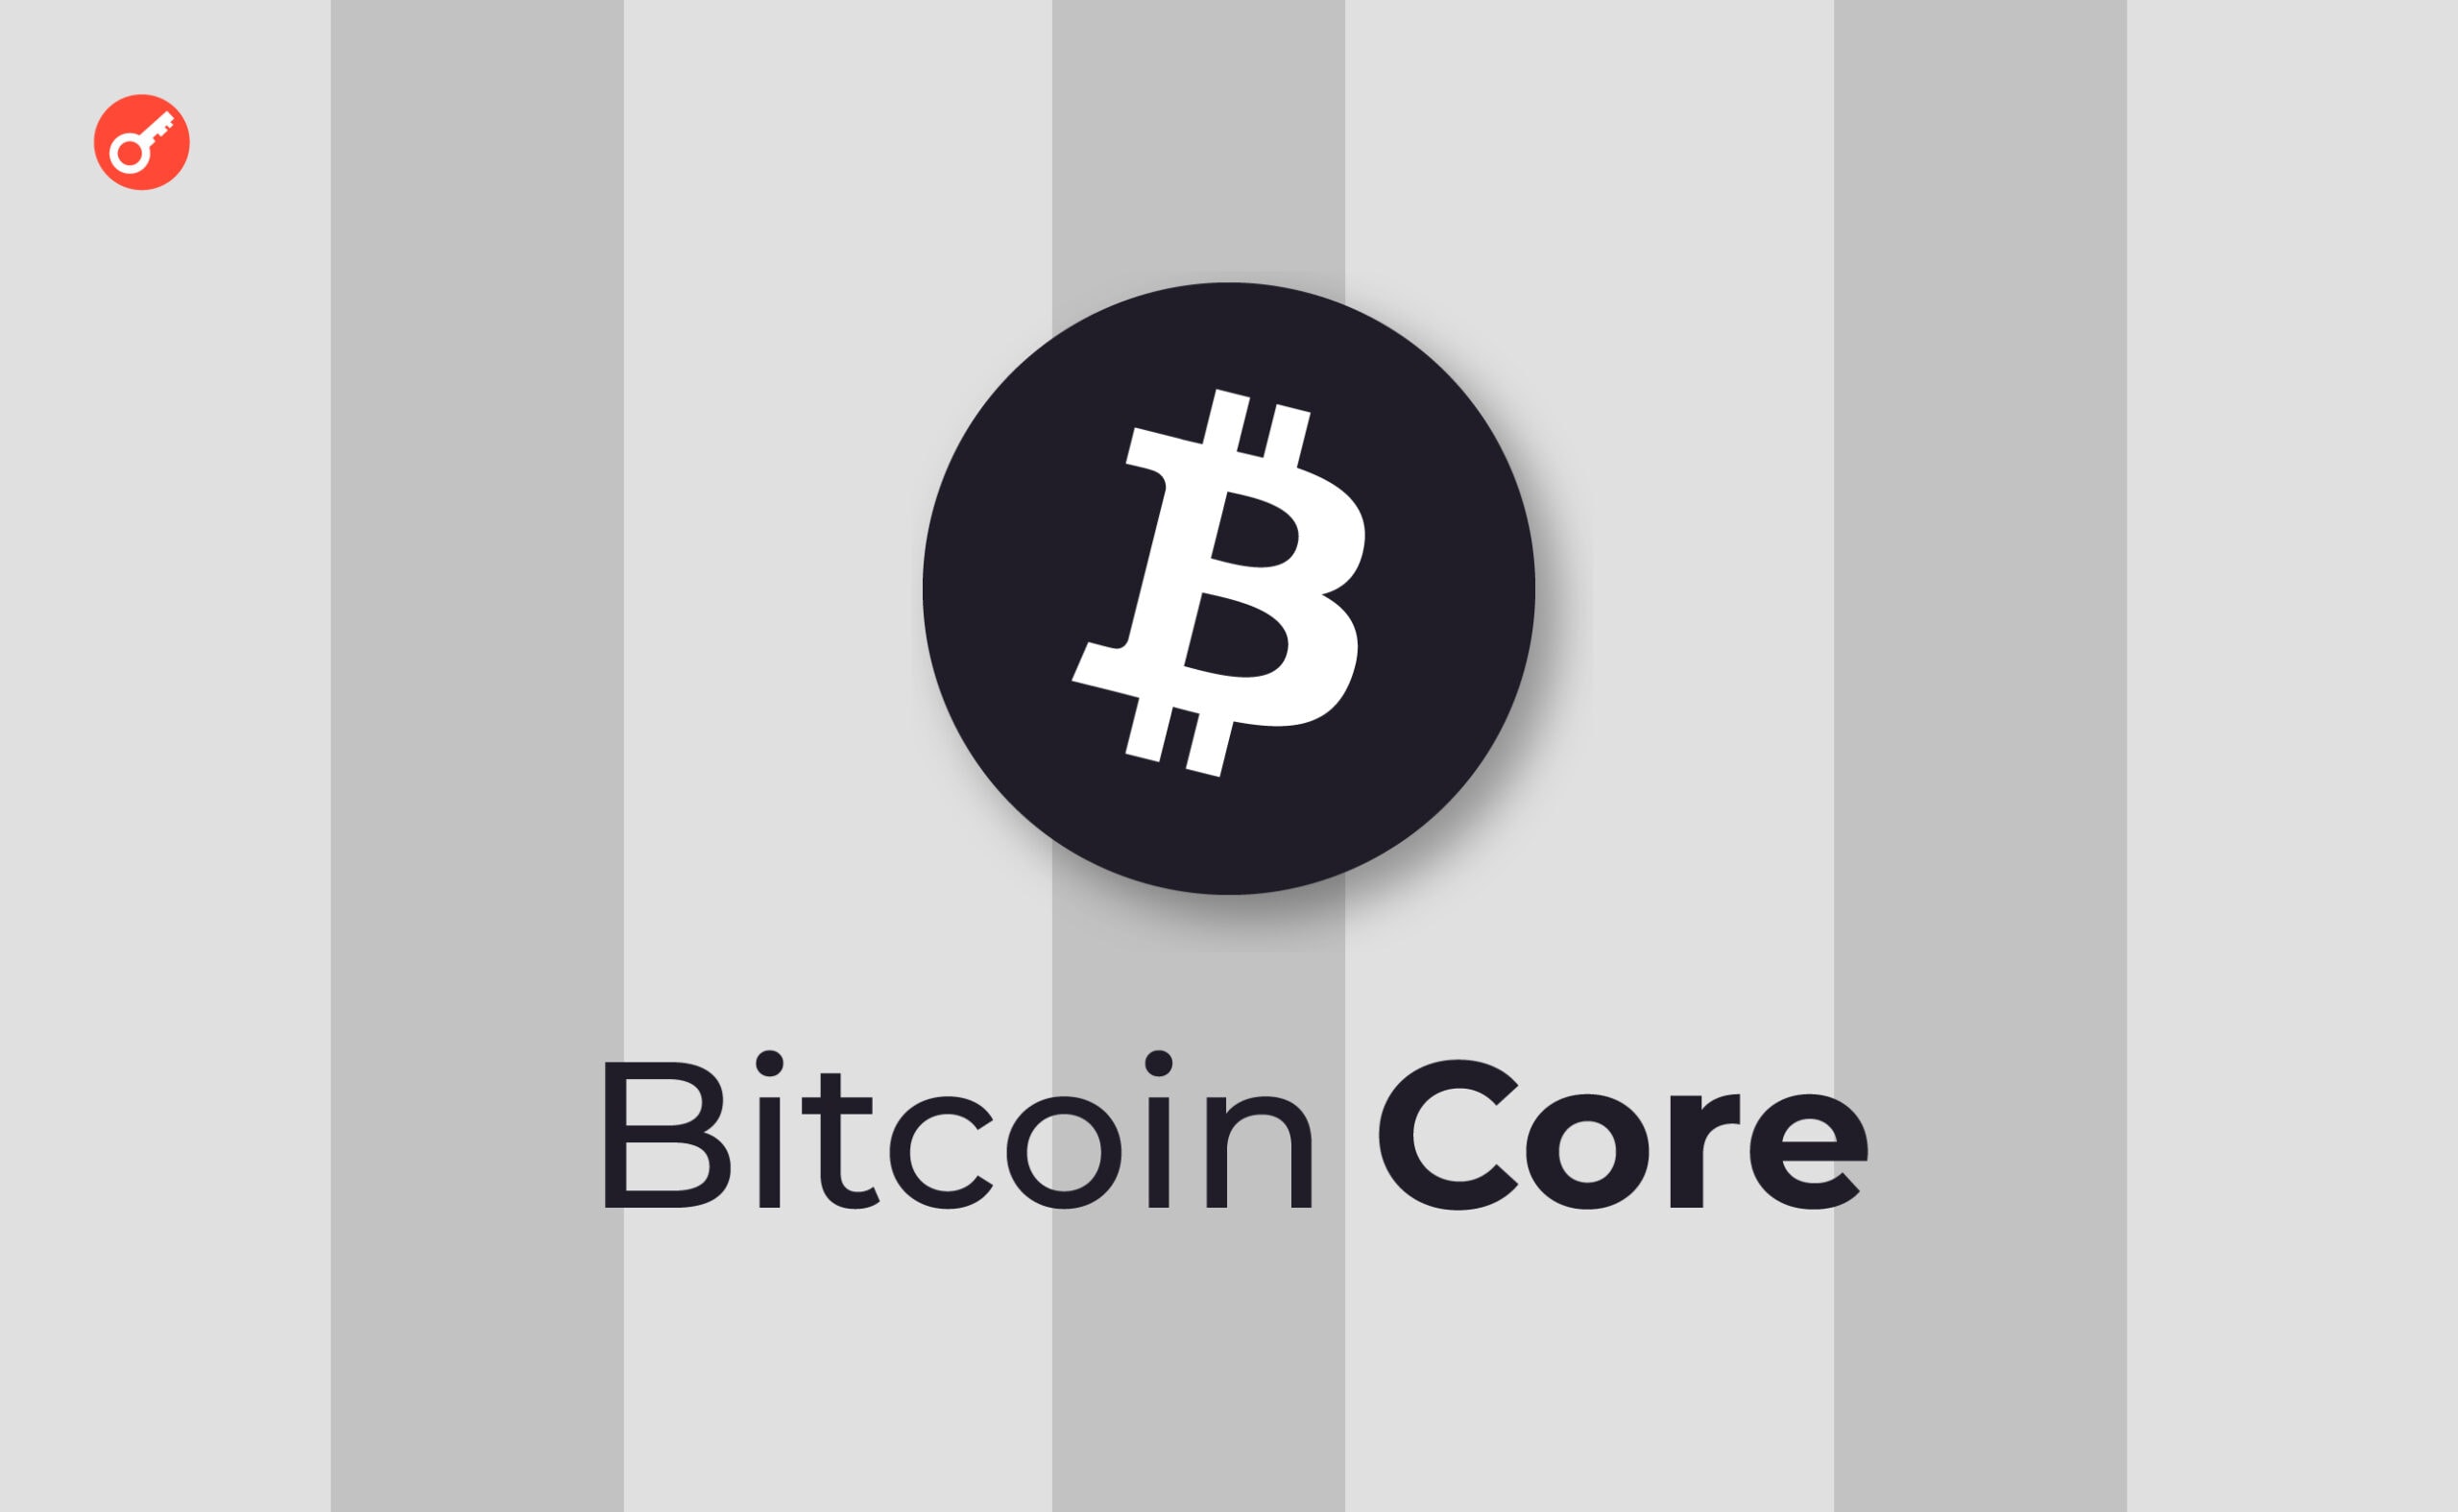 Розробник Bitcoin Core пішов у відставку заради власного стартапу. Головний колаж новини.